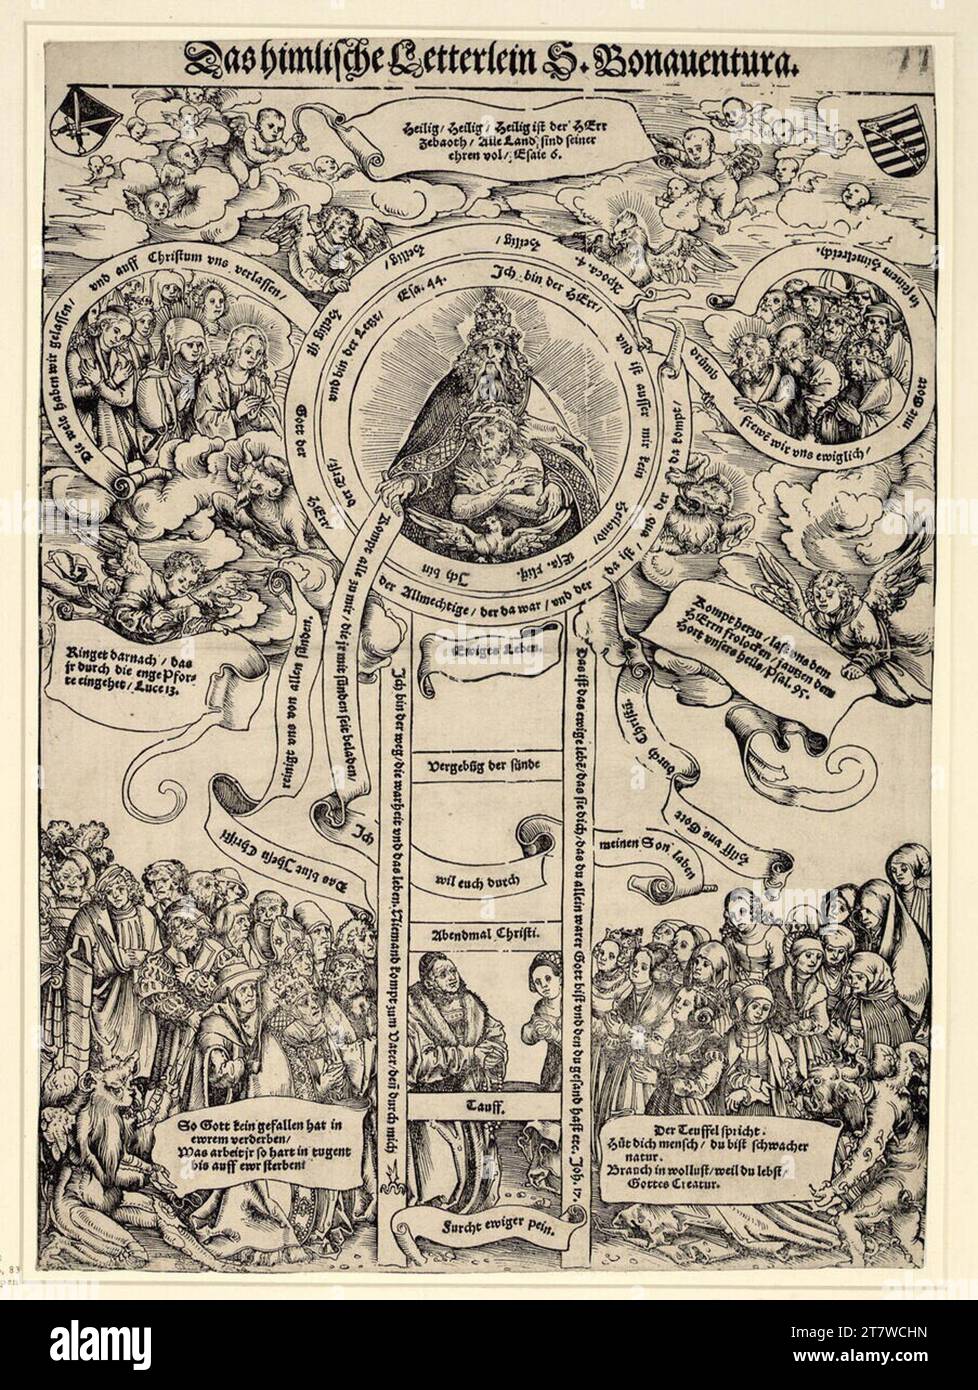 Lucas Cranach d. Ä. Die himmlische Leiter von St. Bonaventura. Holzschnitt und Schriftdruck um 1513 Stockfoto